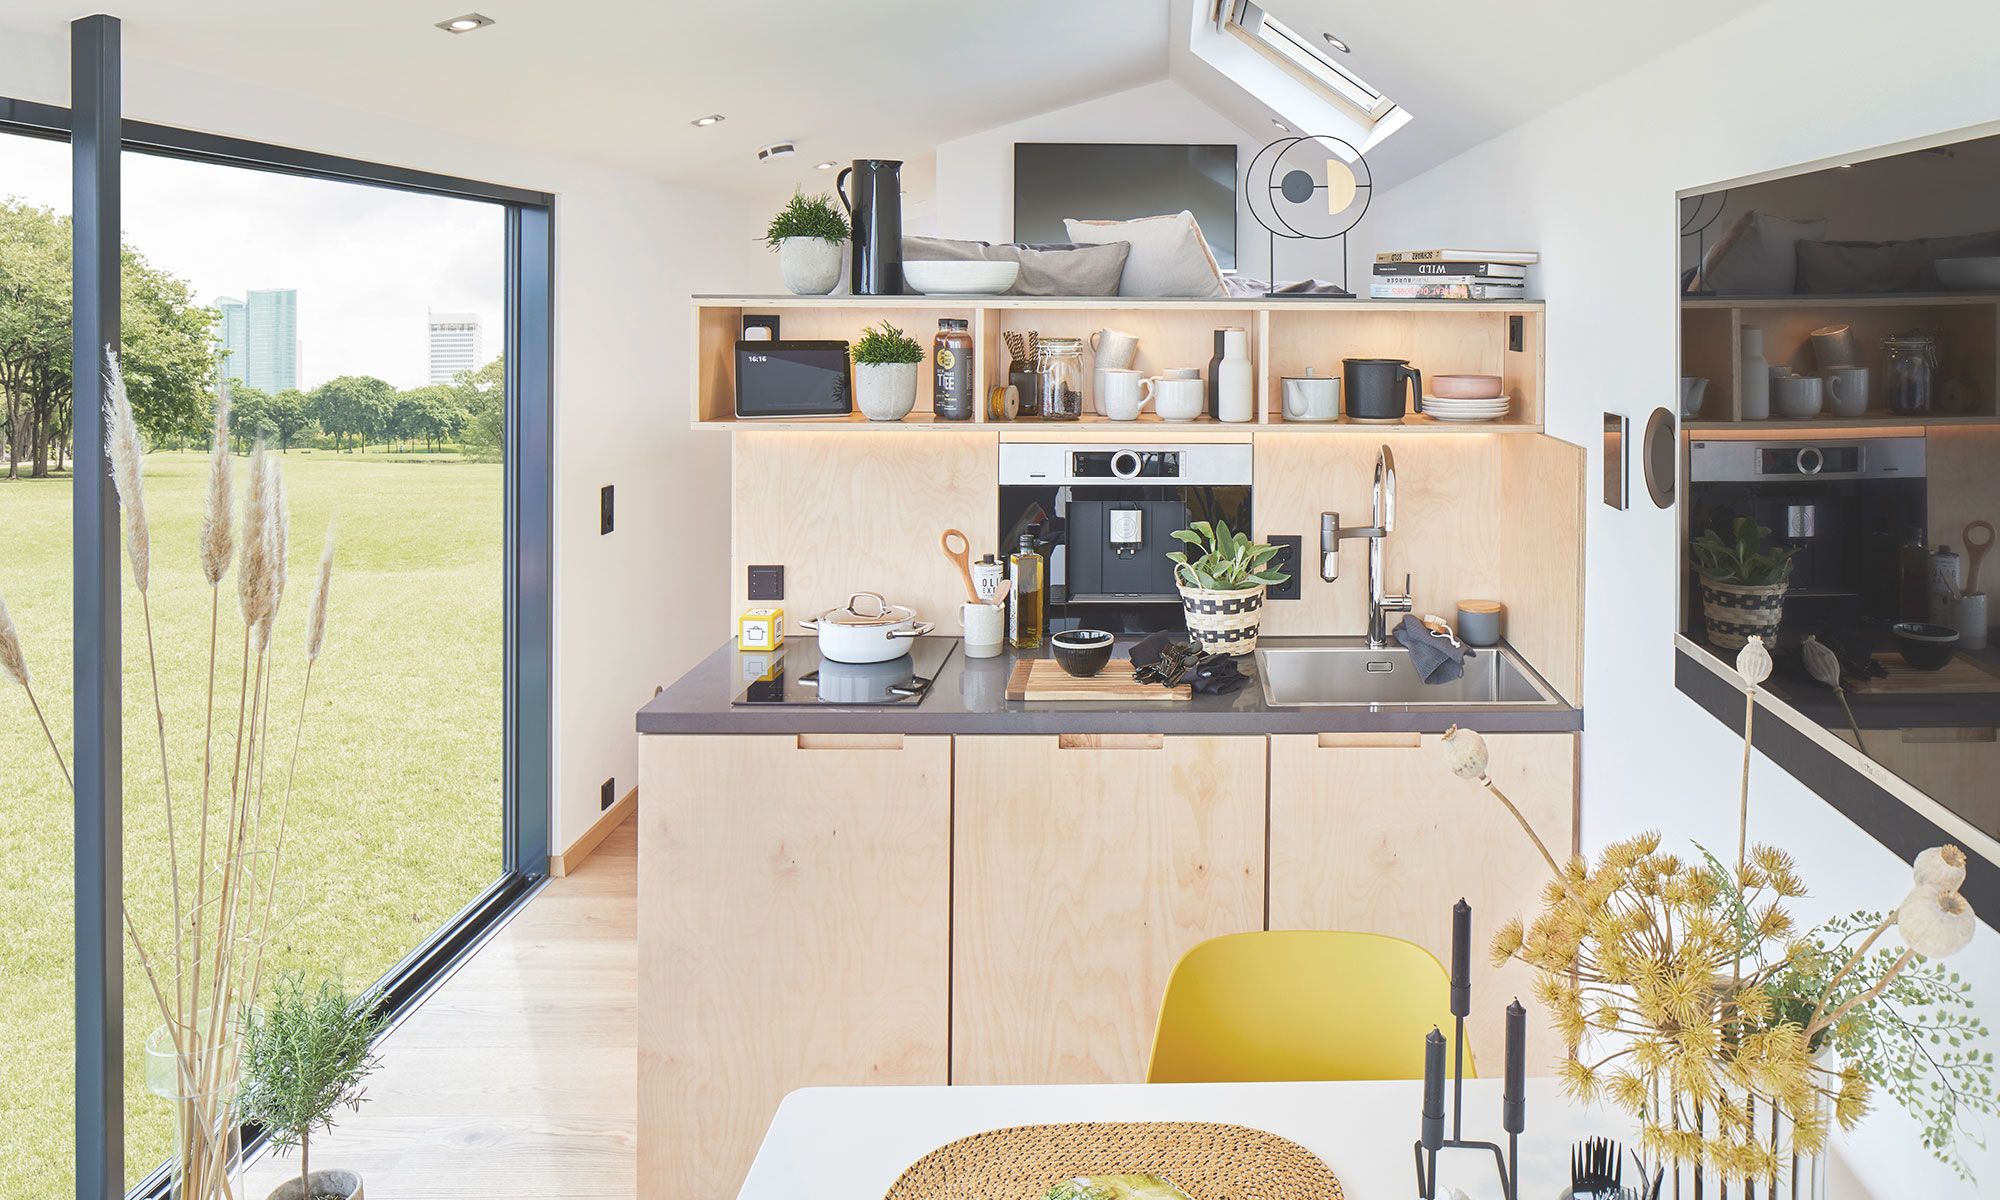 Das smarte Tiny House bietet modernen Lifestyle auf kleinstem Raum – inklusive intelligenter Technik von Gira.